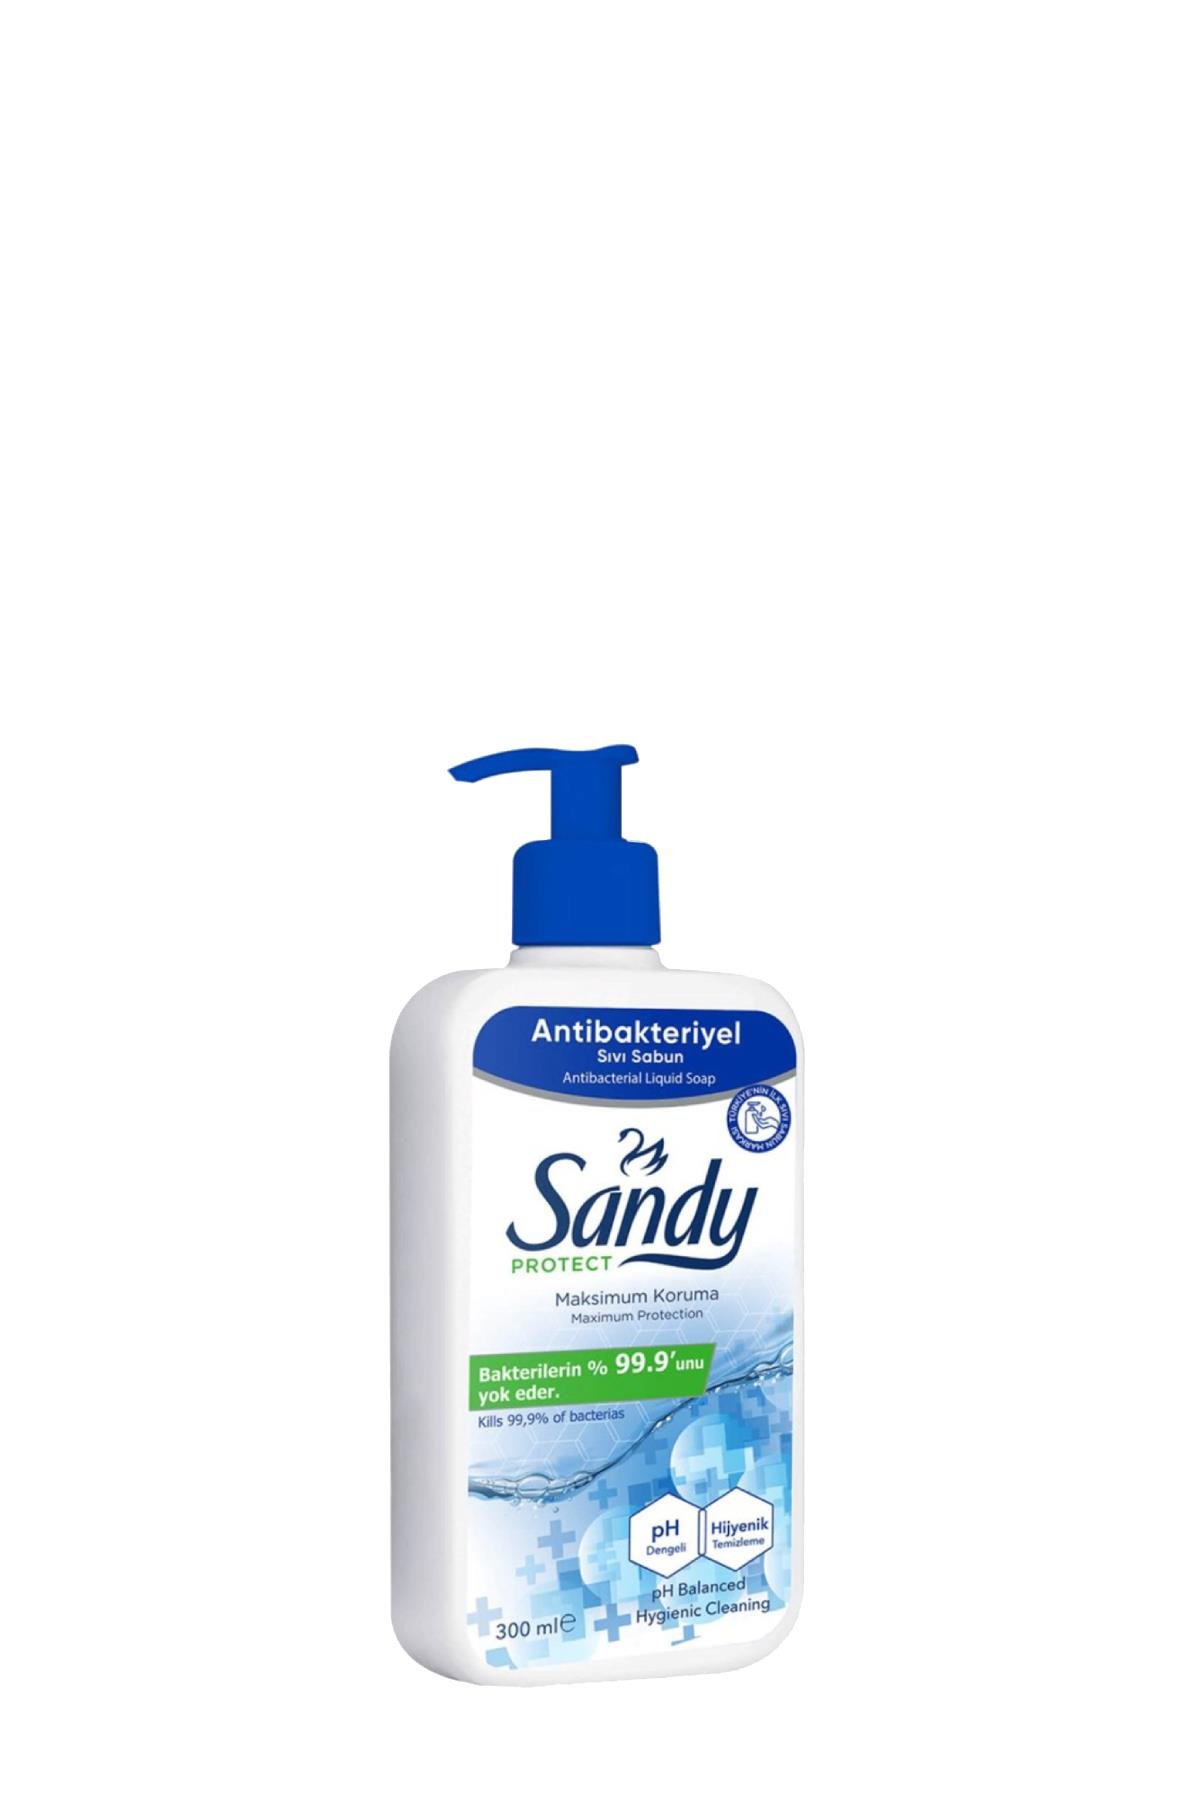 Sandy Antibakteriyel Sıvı Sabun 300 ml - Pereja